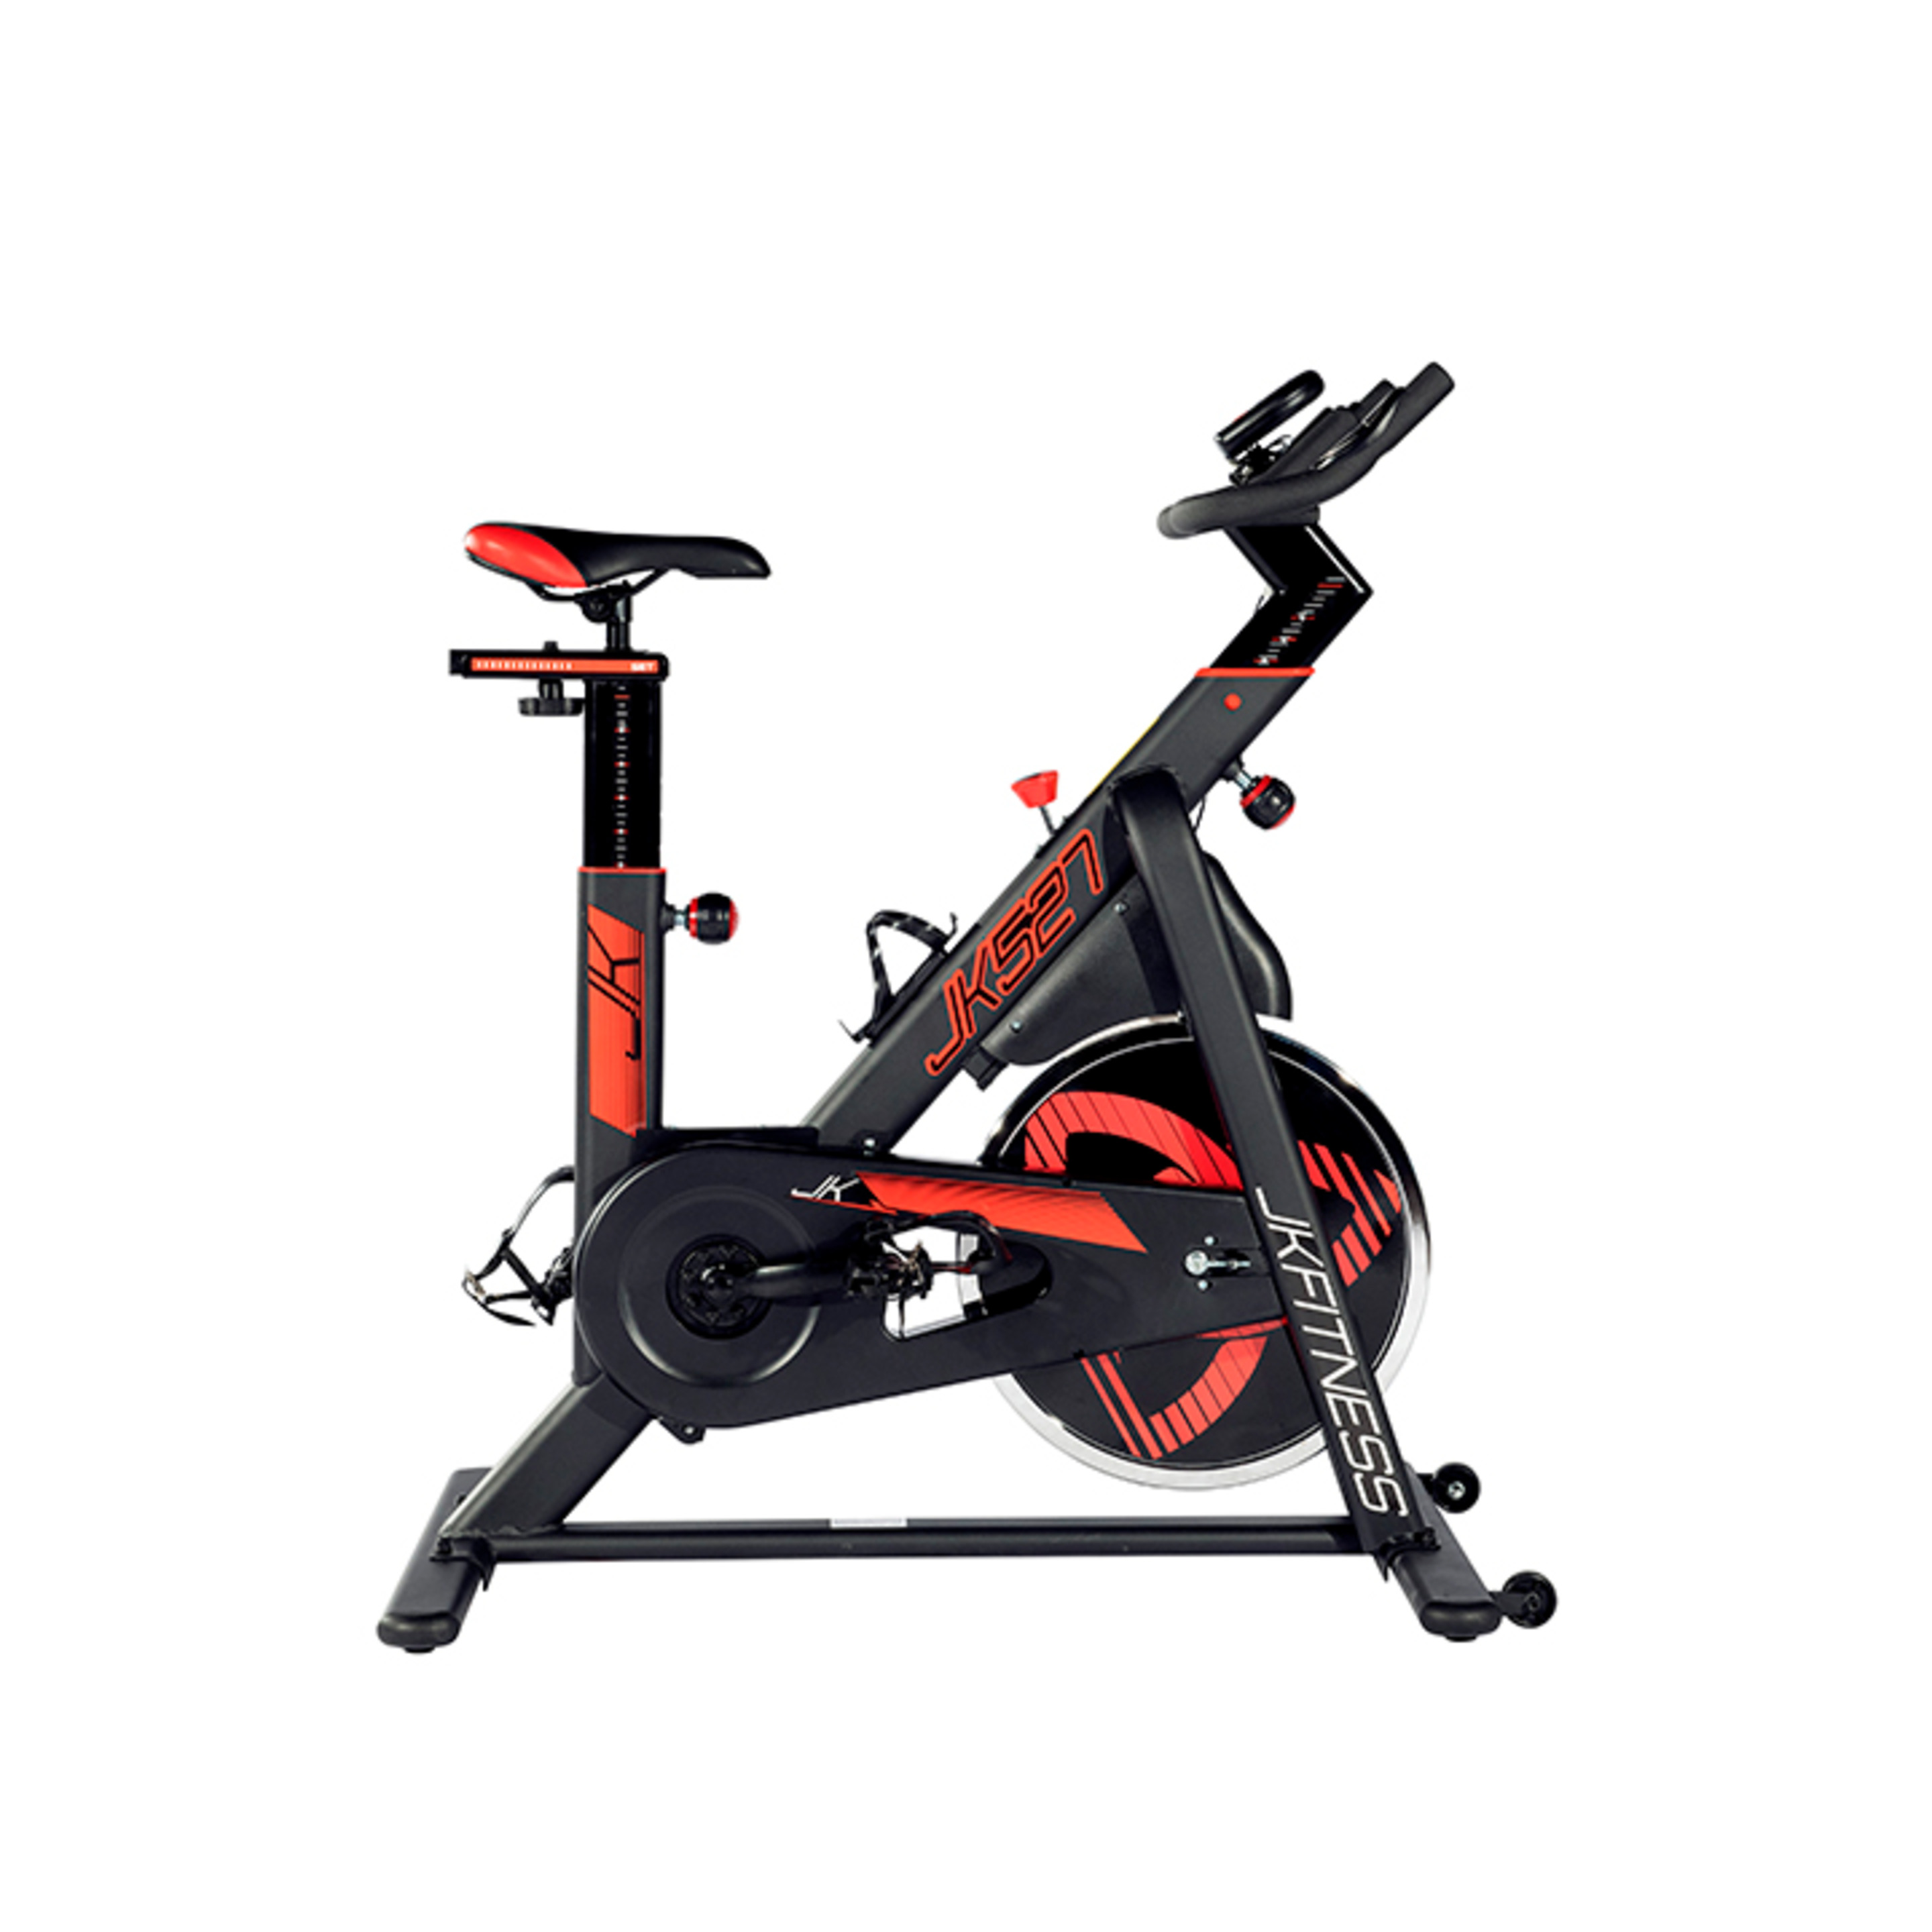 Bicicleta Indoor Jk Fitness Jk527 - negro - 